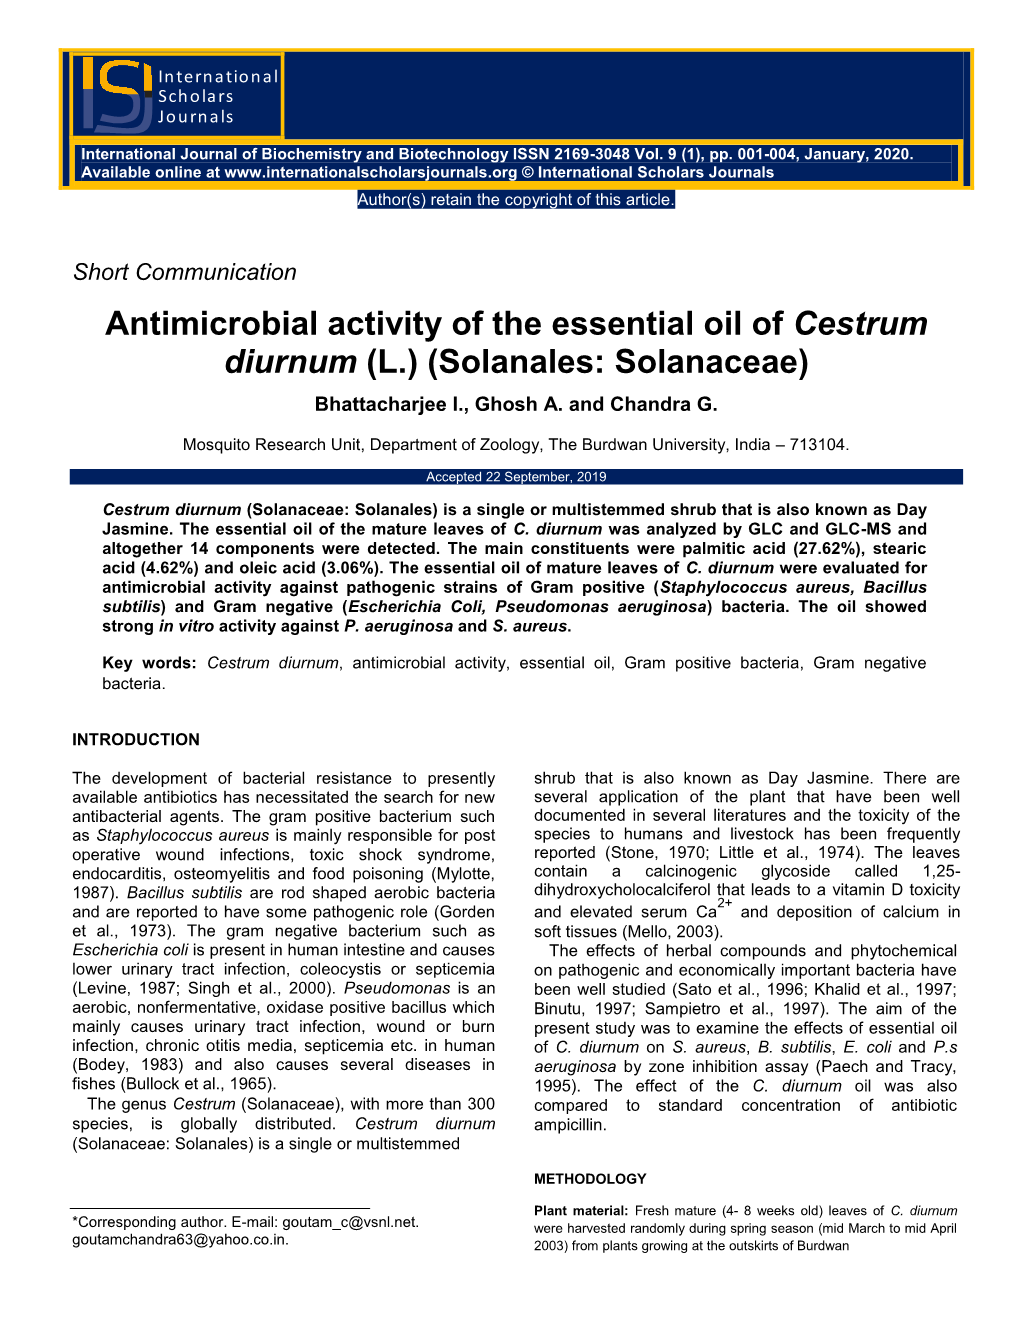 Antimicrobial Activity of the Essential Oil of Cestrum Diurnum (L.) (Solanales: Solanaceae)